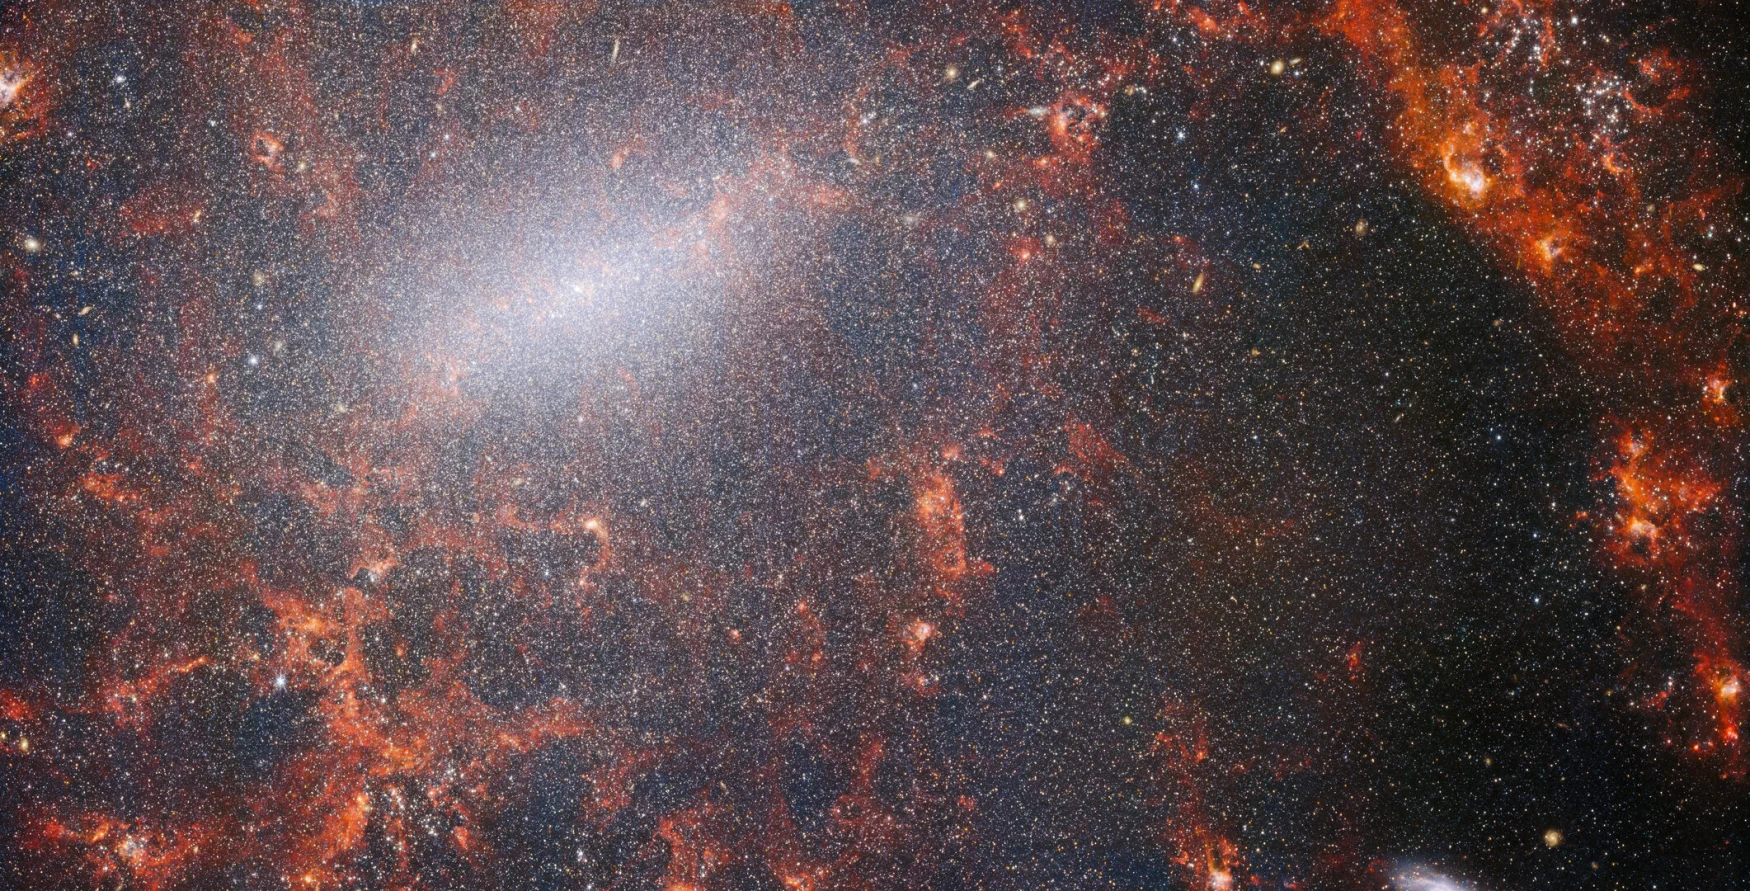 Filamente fine de praf și grupuri de stele strălucitoare sunt văzute în această imagine de la telescopul spațial James Webb NASA/ESA/CSA.  Această vedere de la instrumentul NIRCam al lui Webb este împânzită cu grupul masiv de stele al galaxiei, cel mai dens împachetat de-a lungul barei sale centrale strălucitoare, împreună cu nori roșii aprinși de gaz iluminați de stele tinere din interior.  Aceste stele sclipitoare aparțin galaxiei spirale barieră NGC 5068, care se află la aproximativ 17 milioane de ani lumină de Pământ, în constelația Fecioarei.  Această imagine a lui NGC 5068 face parte dintr-o campanie de creare a unui tezaur de astronomie, un depozit pentru observațiile formării stelelor în galaxiile din apropiere.  Pietrele prețioase anterioare din această colecție pot fi văzute aici și aici.  Aceste observații sunt deosebit de valoroase pentru astronomi din două motive.  Prima este că formarea stelelor stă la baza multor domenii ale astronomiei, de la fizica plasmelor interstelare slabe până la evoluția galaxiilor întregi.  Prin observarea formării stelelor în galaxiile din apropiere, astronomii speră să înceapă un progres științific major cu unele dintre primele date disponibile de la Webb.  Al doilea motiv este că observațiile lui Webb se bazează pe alte studii care utilizează telescoape, inclusiv telescopul spațial Hubble NASA/ESA și unele dintre cele mai capabile observatoare terestre din lume.  Webb a colectat imagini ale a 19 galaxii care formează stele din apropiere, pe care astronomii le-au putut combina apoi cu cataloagele Hubble de 10.000 de grupuri de stele, a cartografiat spectral 20.000 de nebuloase cu emisie de stele de la Very Large Telescope (VLT) și au observat 12.000 din nebuloase întunecate.  , nori moleculari densi identificați de Atacama Large Millimeter/Submillimeter Array (ALMA).  Aceste observații acoperă spectrul electromagnetic și oferă astronomilor o oportunitate fără precedent de a reuni detaliile formării stelelor.  Această imagine în infraroșu apropiat a galaxiei este plină de grupul masiv de stele antice care formează nucleul NGC 5068. Vederea clară a NIRCam permite astronomilor să privească prin gazul și praful galaxiei pentru a-și examina stelele mai îndeaproape.  De-a lungul traseului brațelor spiralate sunt nori denși și strălucitori de praf: acestea sunt regiuni H II, grupuri de hidrogen gazos unde se formează noi stele.  Stele active, energice, ionizează hidrogenul din jurul lor, care, atunci când este combinat cu emisia de praf fierbinte, produce această strălucire roșiatică.  Regiunile H II reprezintă o țintă excelentă pentru astronomi, iar instrumentele lui Webb sunt instrumentele perfecte pentru examinarea lor, rezultând această imagine. [Image Description: A close-in image of a spiral galaxy, showing its core and part of a spiral arm. At this distance thousands upon thousands of tiny stars that make up the galaxy can be seen. The stars are most dense in a whitish bar that forms the core, and less dense out from that towards the arm. Bright red gas clouds follow the twist of the galaxy and the spiral arm.] Legături NGC 5068 (NIRCam + imagine MIRI) 